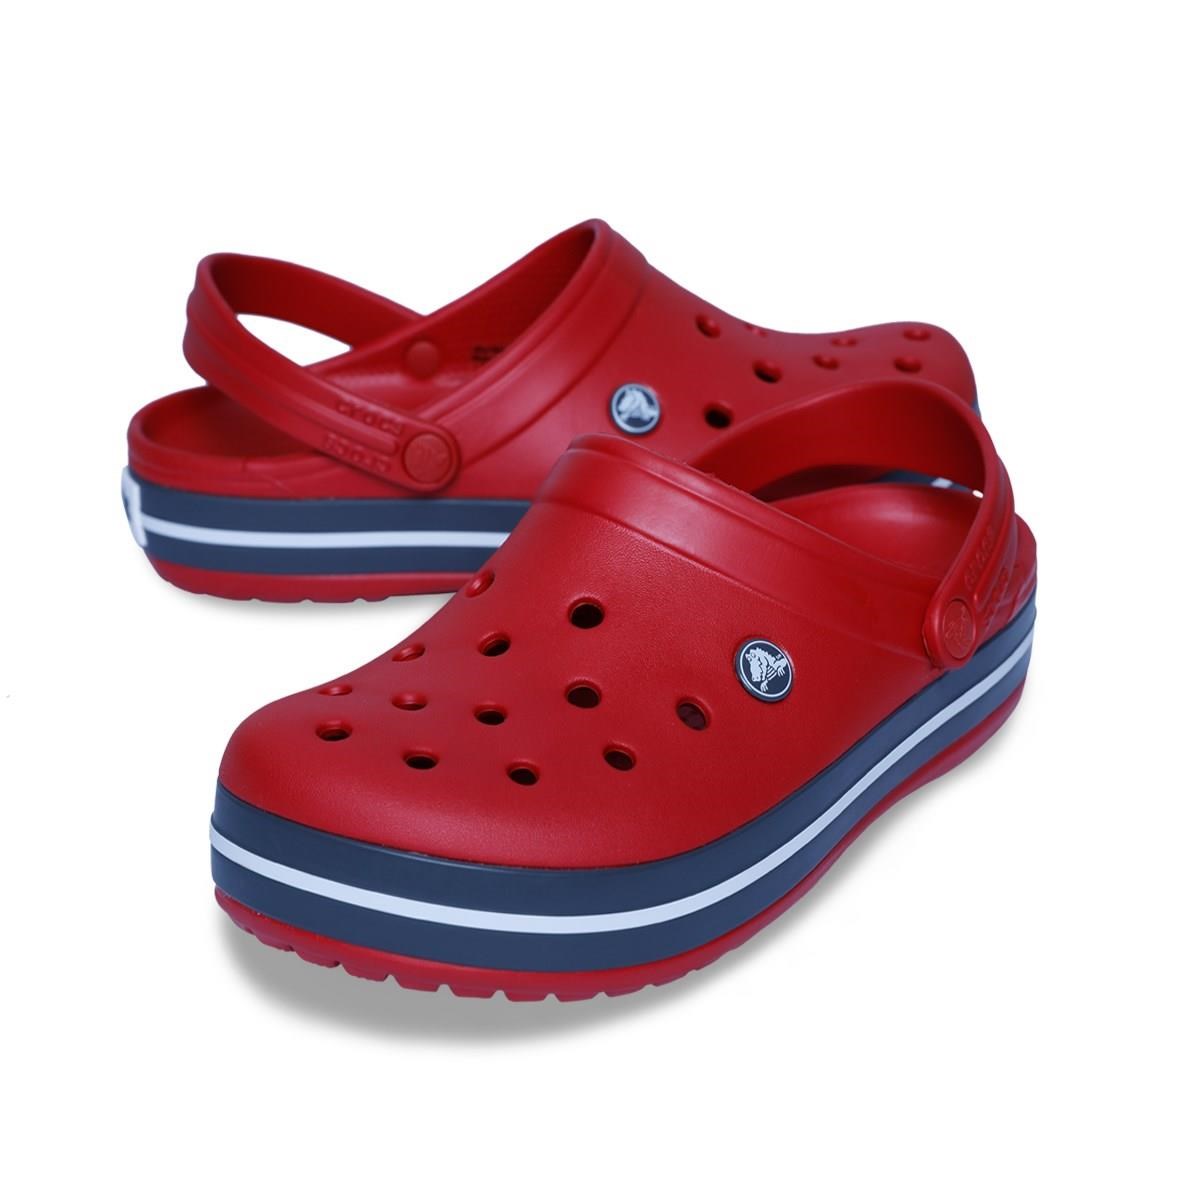 Crocs Crocband Bayan Terlik - Kırmızı